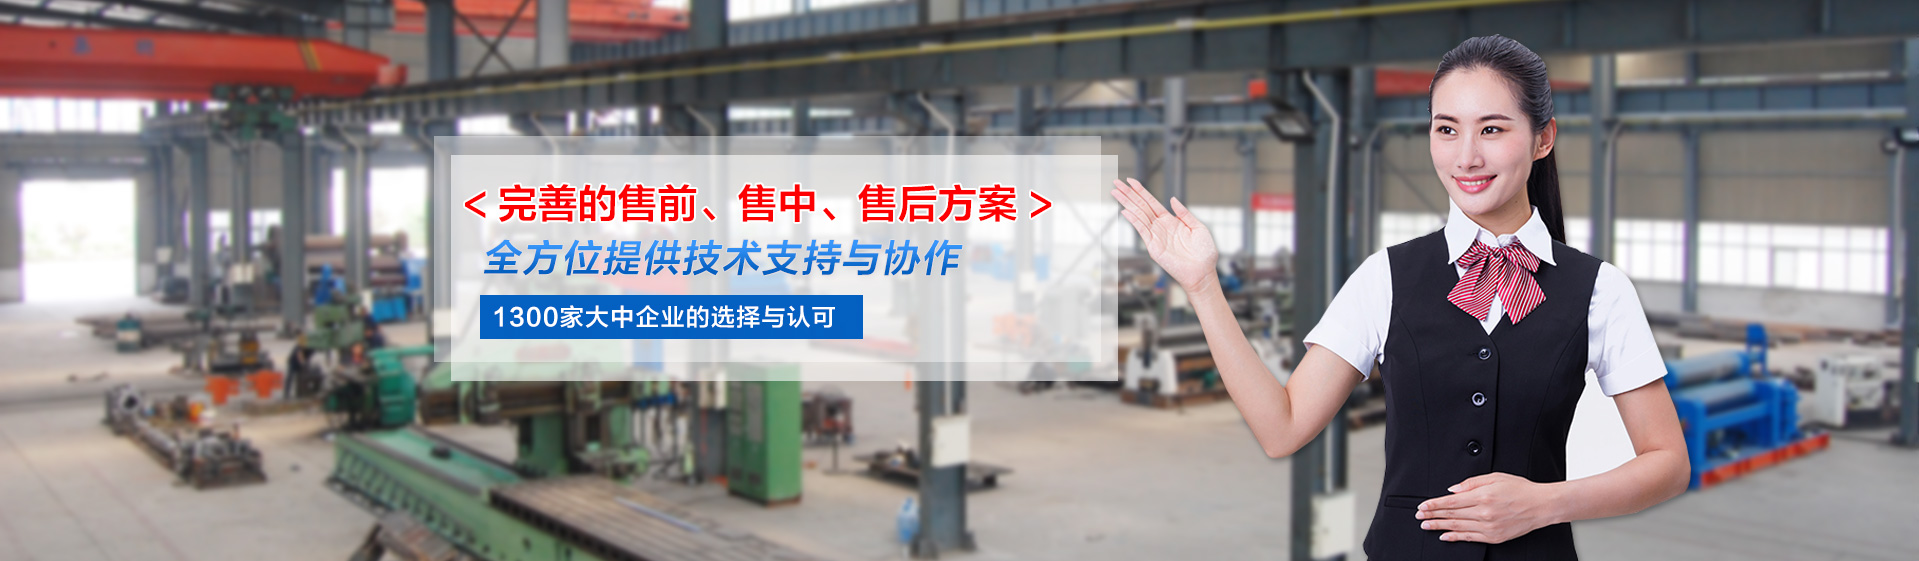 沁陽市巨力鍛壓機床制造有限公司